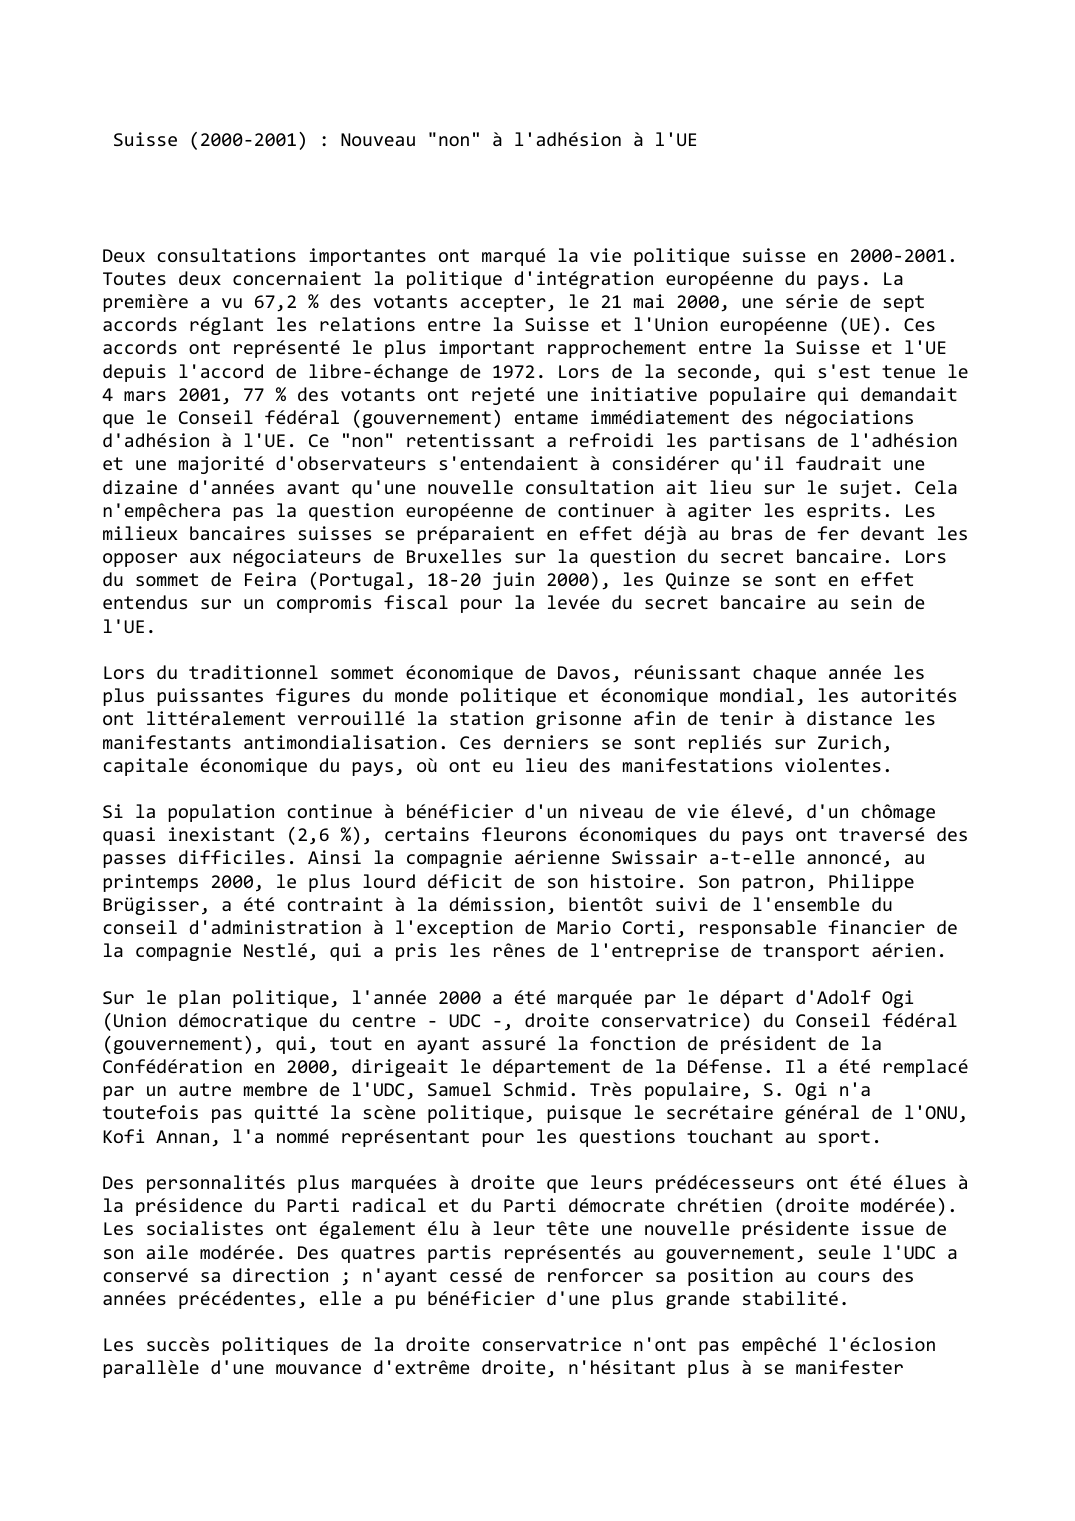 Prévisualisation du document Suisse (2000-2001) : Nouveau "non" à l'adhésion à l'UE